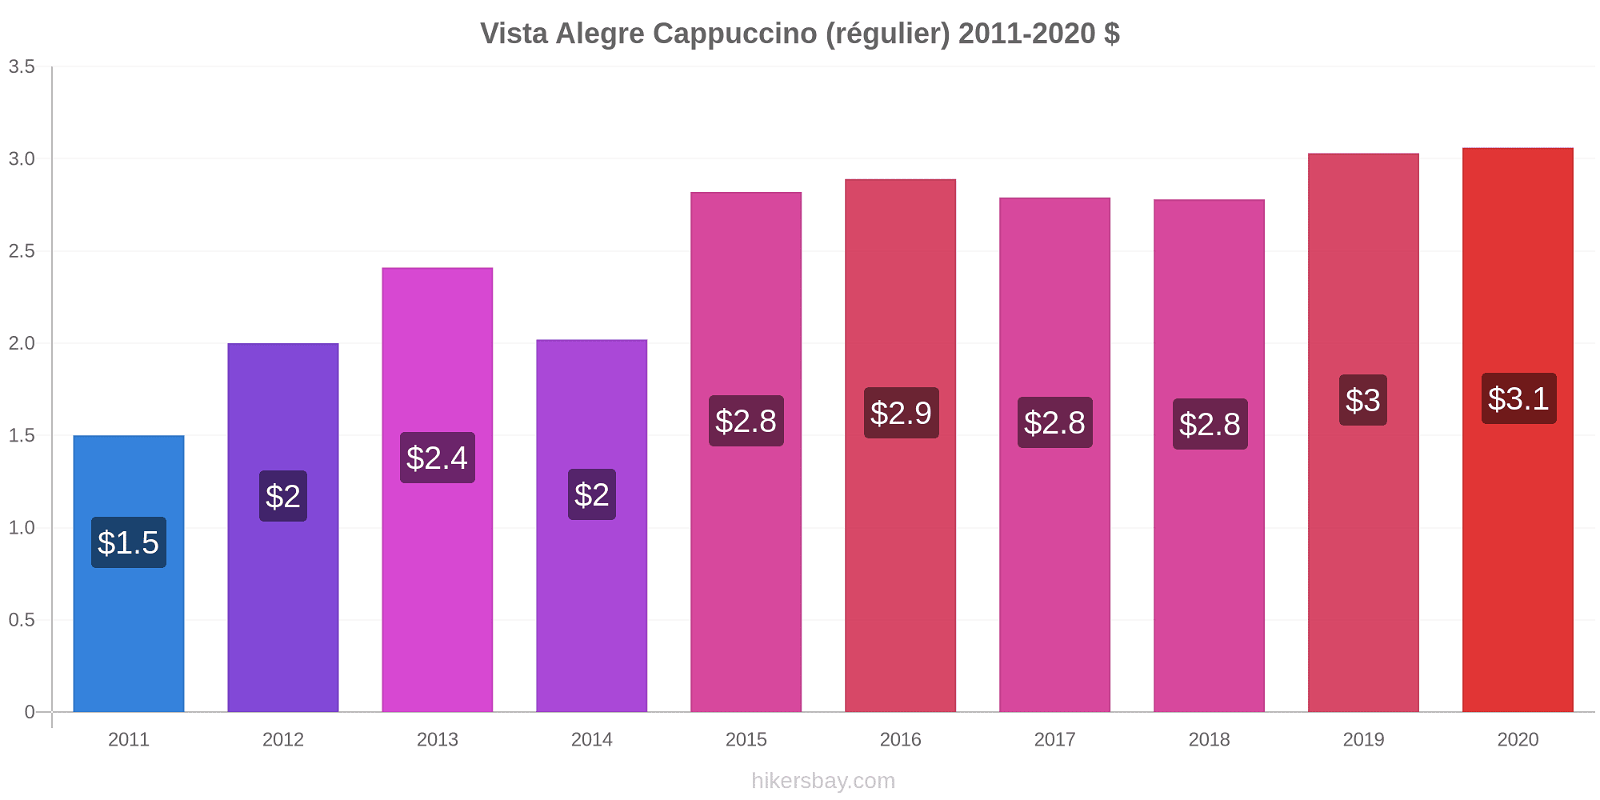 Vista Alegre changements de prix Cappuccino (régulier) hikersbay.com